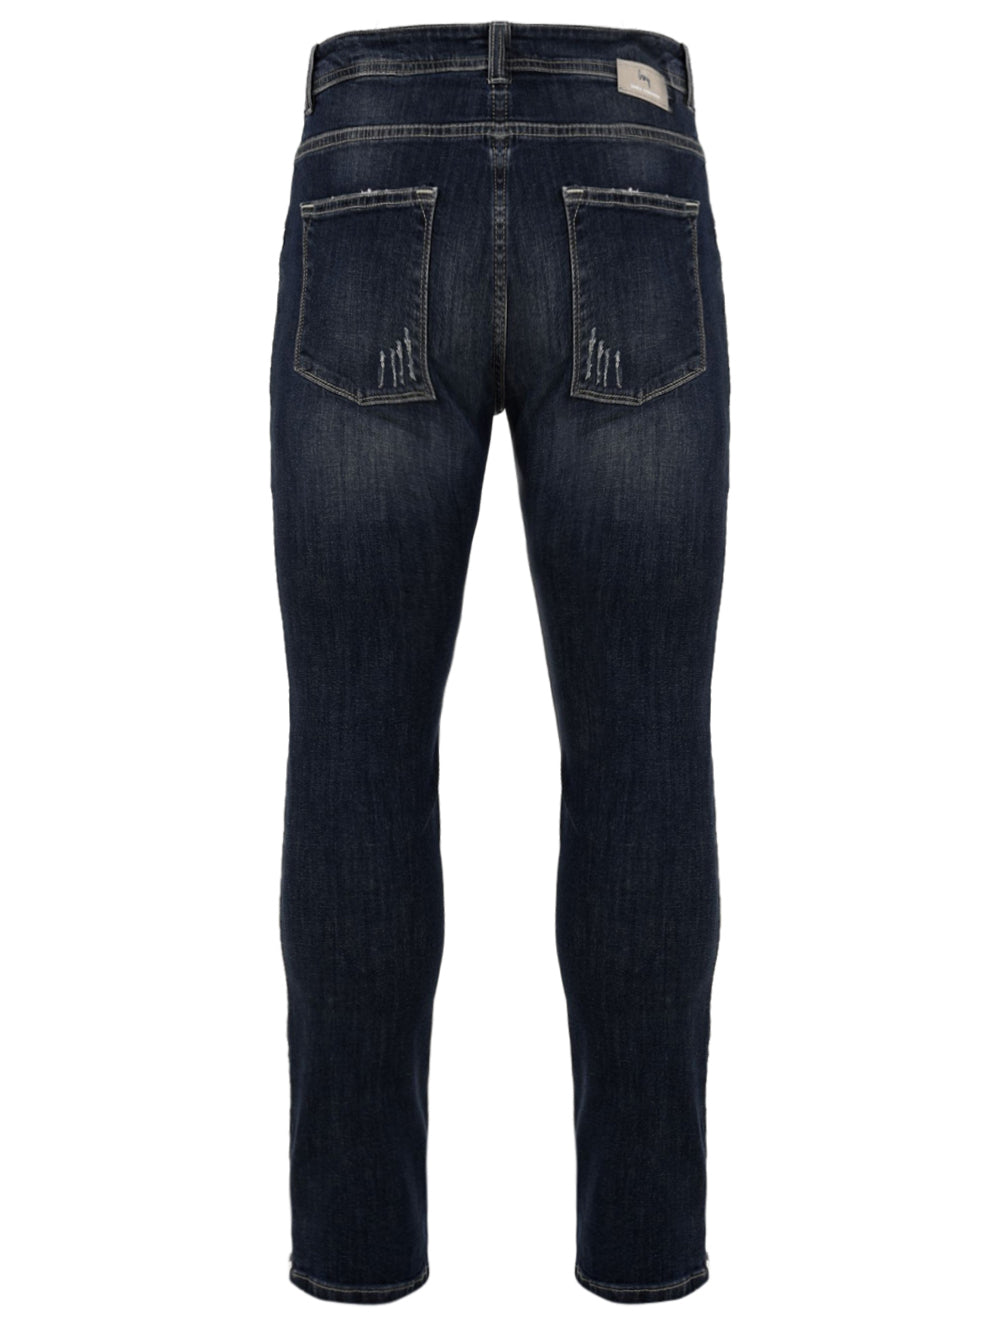 Immagine retro del jeans lavaggio scuro da uomo firmato Daniele Alessandrini con tasche posteriori,fascetta in vita con passanti e piccola salpa posteriore logata.